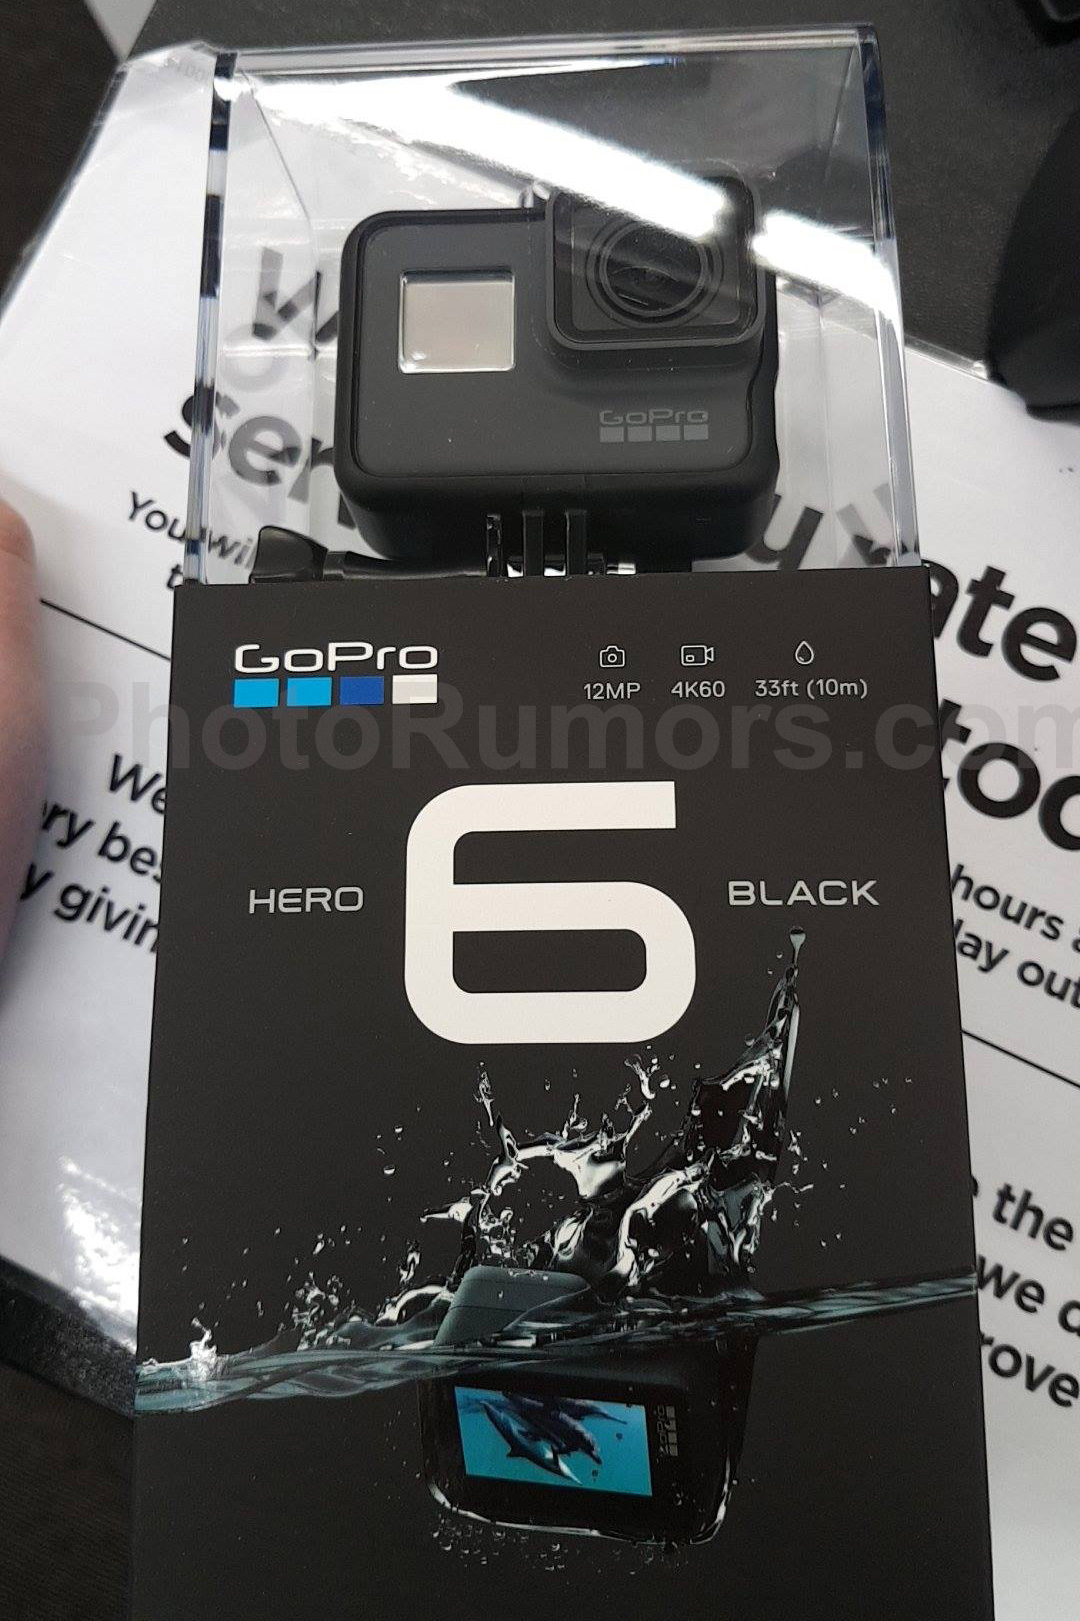 Gopro Hero 6 Black Should Shoot 4k At 60fps Costs 499 Tweaktown